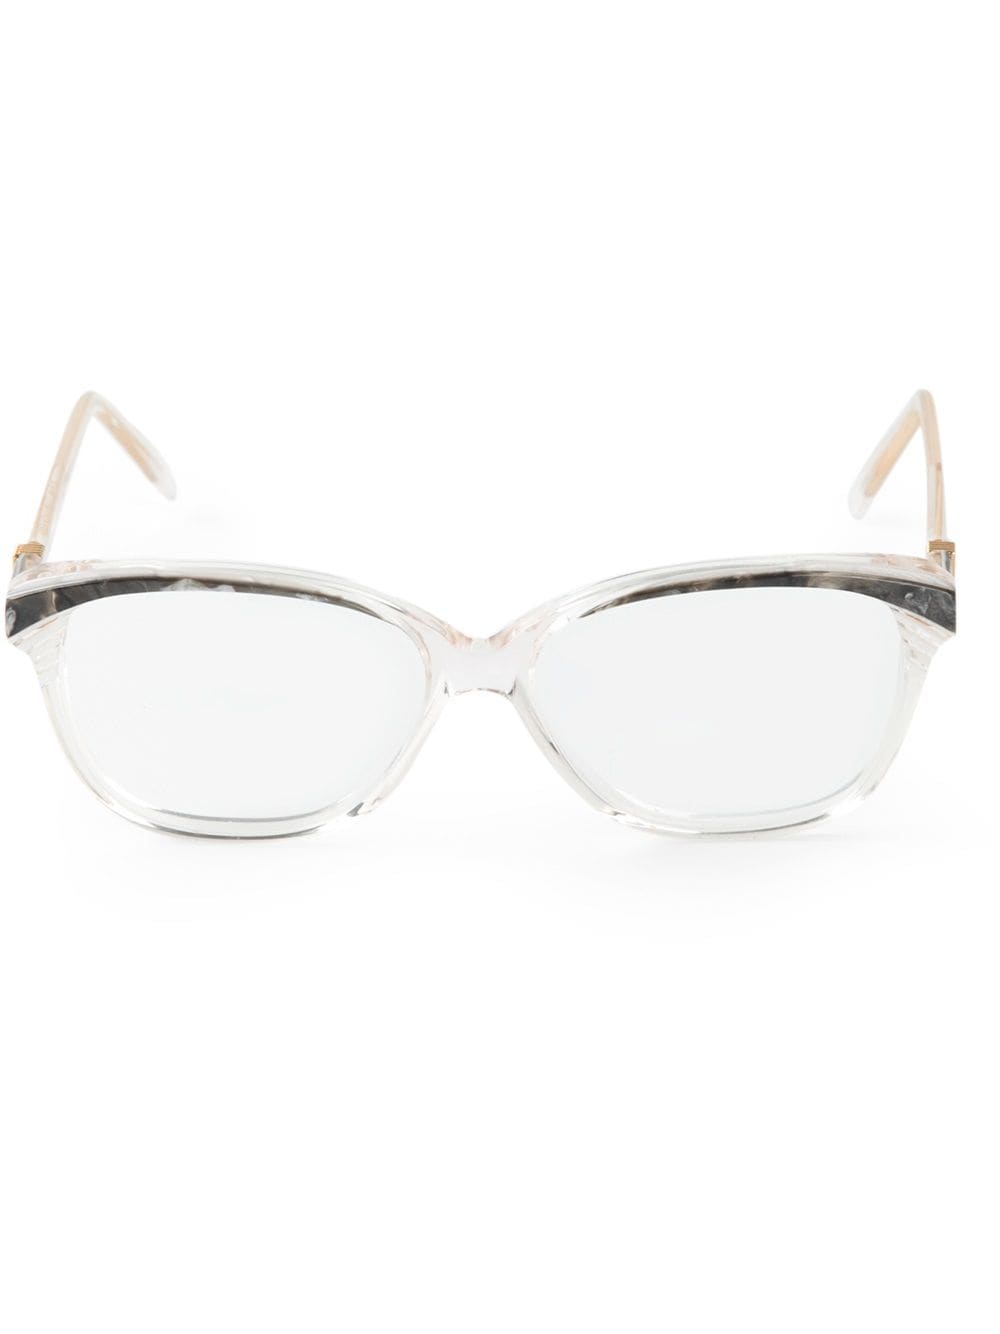 фото Yves Saint Laurent Pre-Owned очки с мраморным эффектом